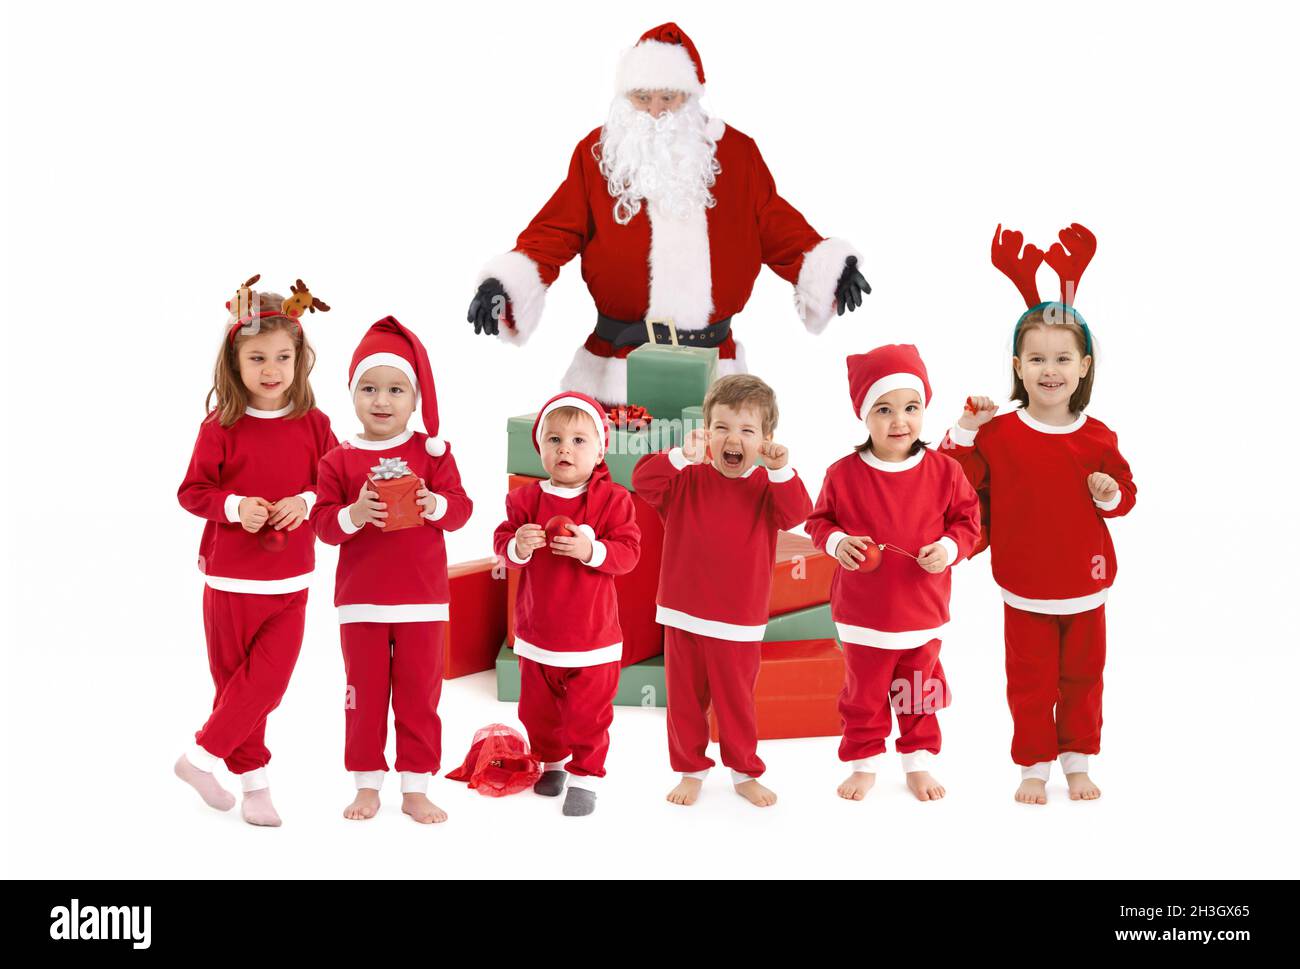 Weihnachtsmann mit glücklichen kleinen Kindern in Kostüm Stockfoto